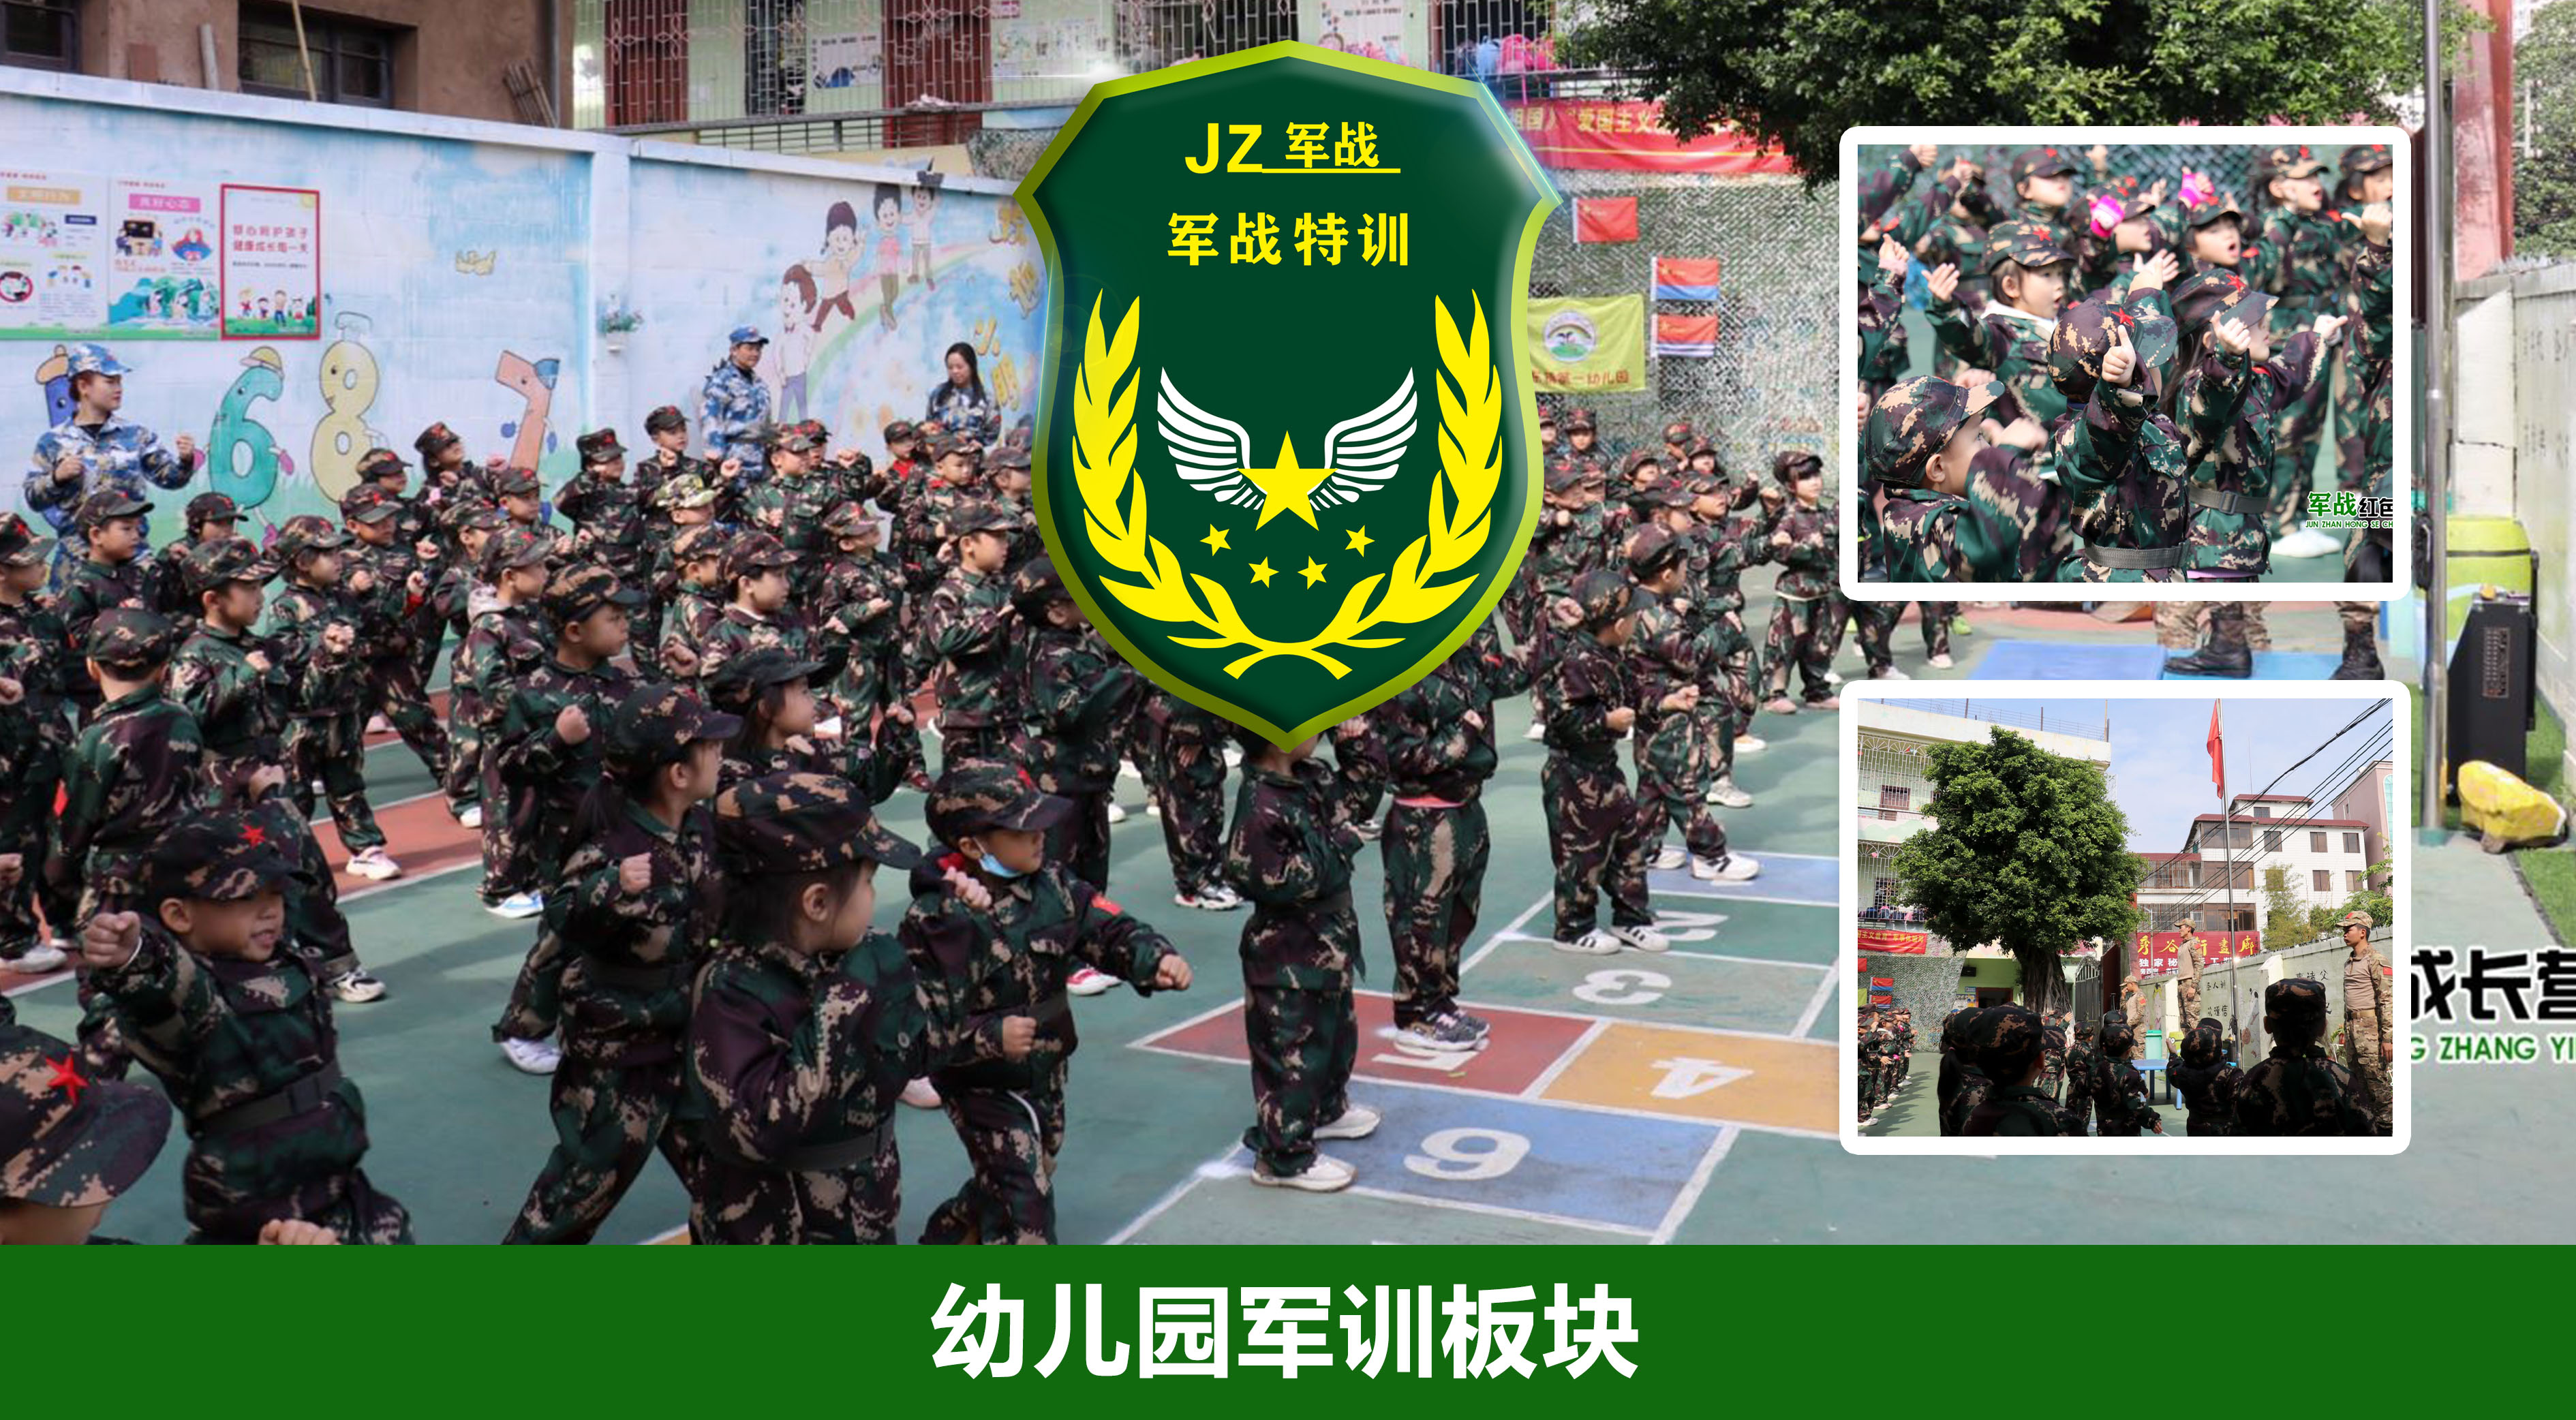 2021水东第一幼儿园《童心向党·我爱祖国》爱国主义军事体验周 第一日